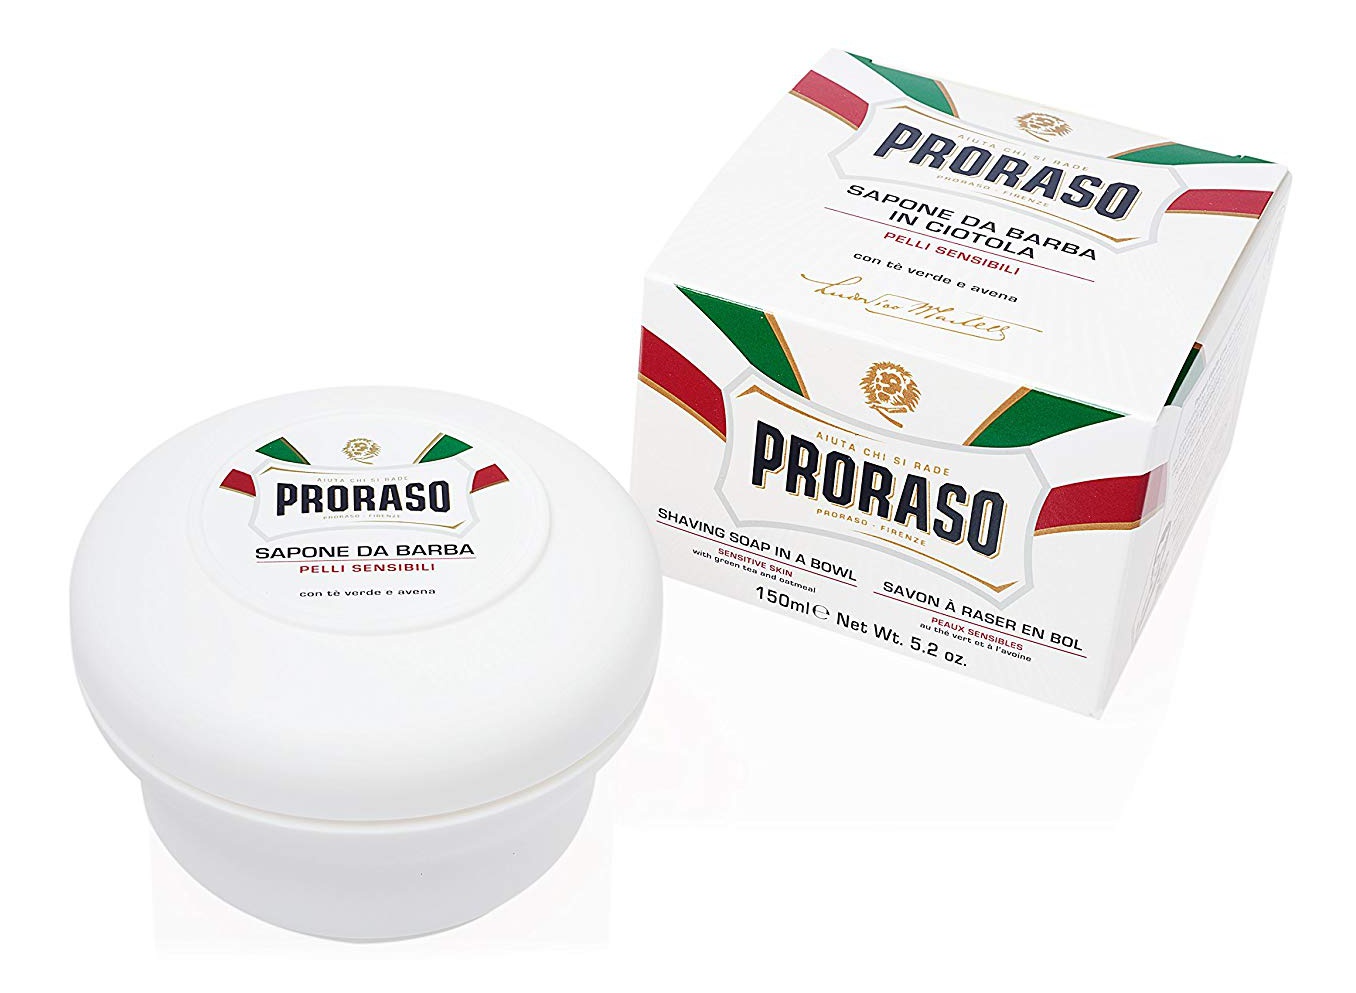 Proraso Shaving Soap In A Bowl - Sensitive Skin